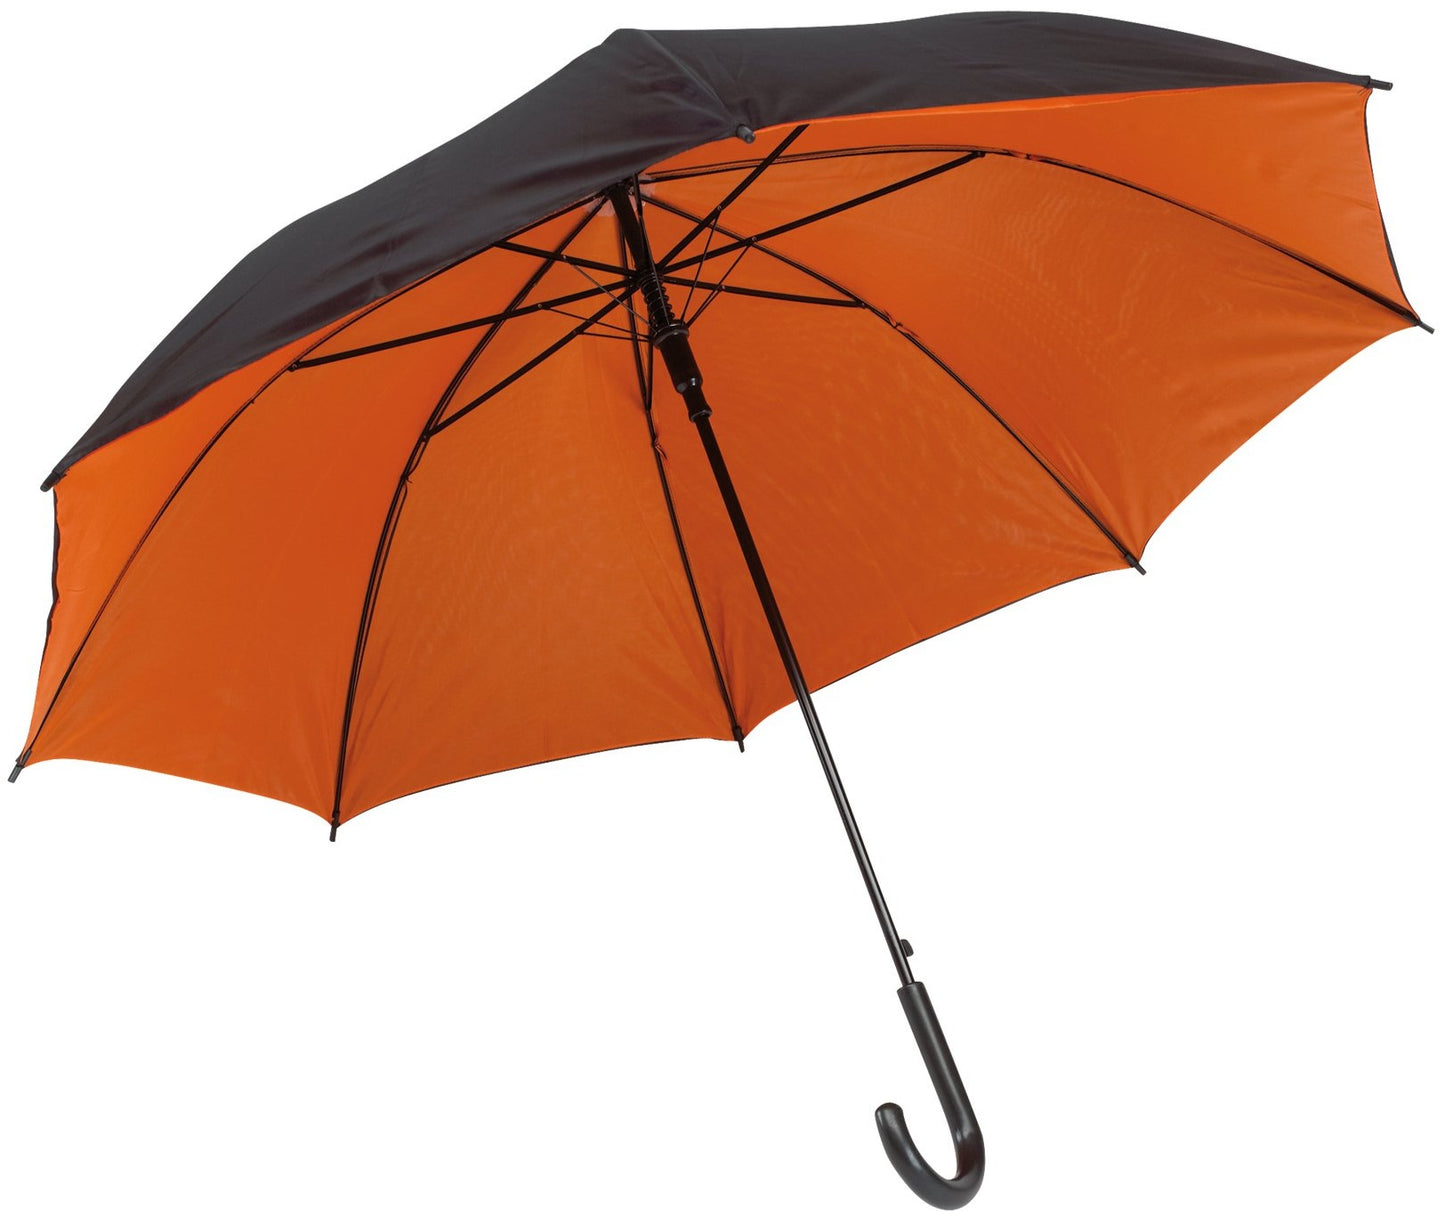 Πορτοκαλί/μαύρη ομπρέλα βροχής, με διπλό ύφασμα, μακριά και αυτόματη.